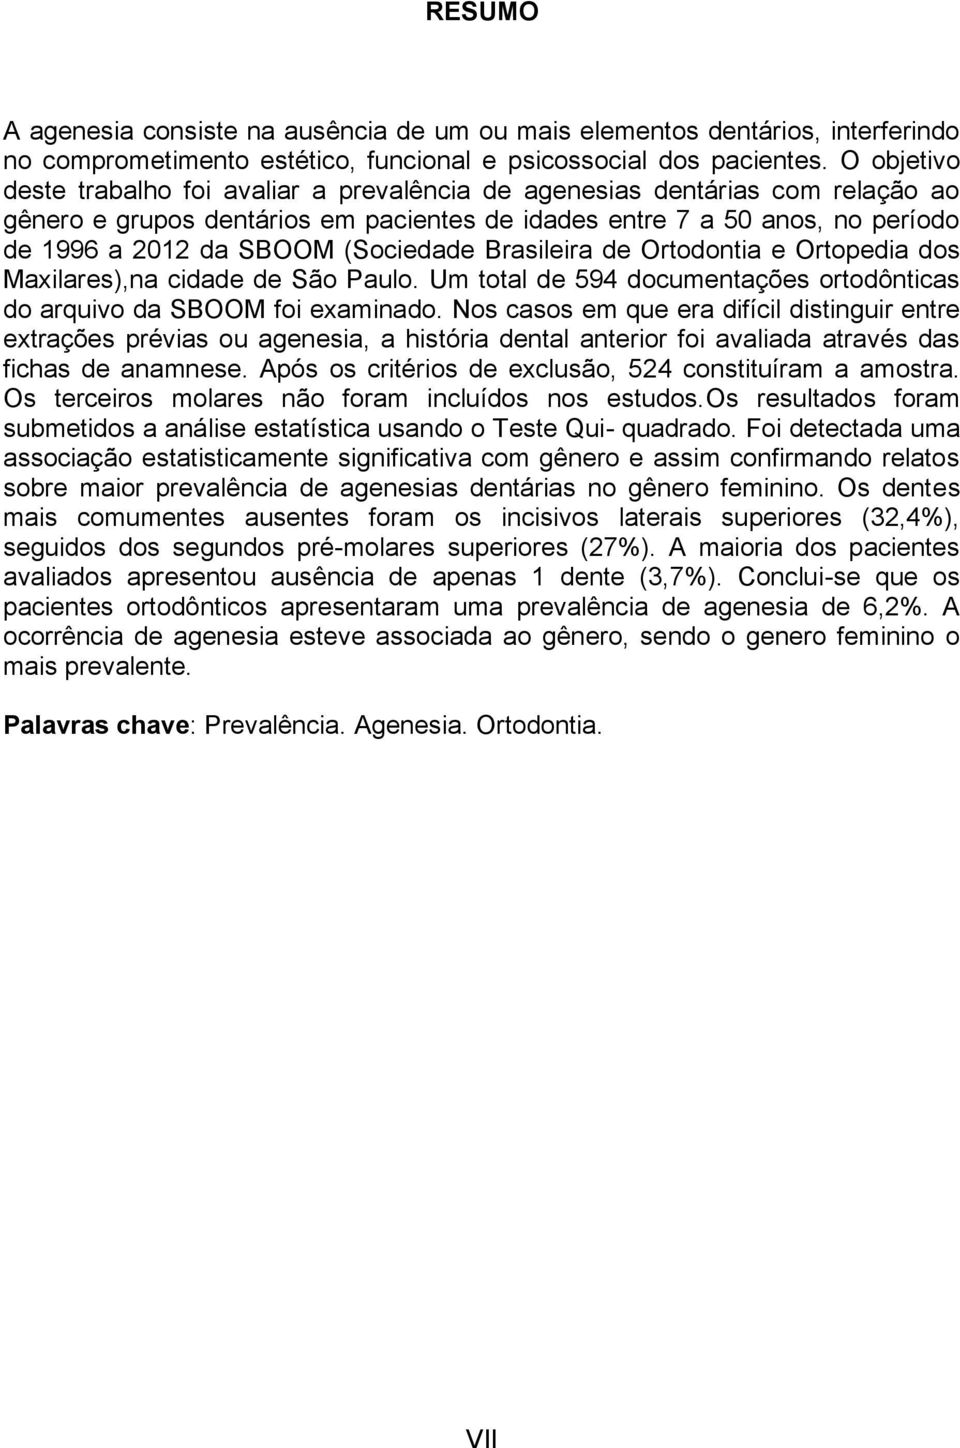 (Sociedade Brasileira de Ortodontia e Ortopedia dos Maxilares),na cidade de São Paulo. Um total de 594 documentações ortodônticas do arquivo da SBOOM foi examinado.